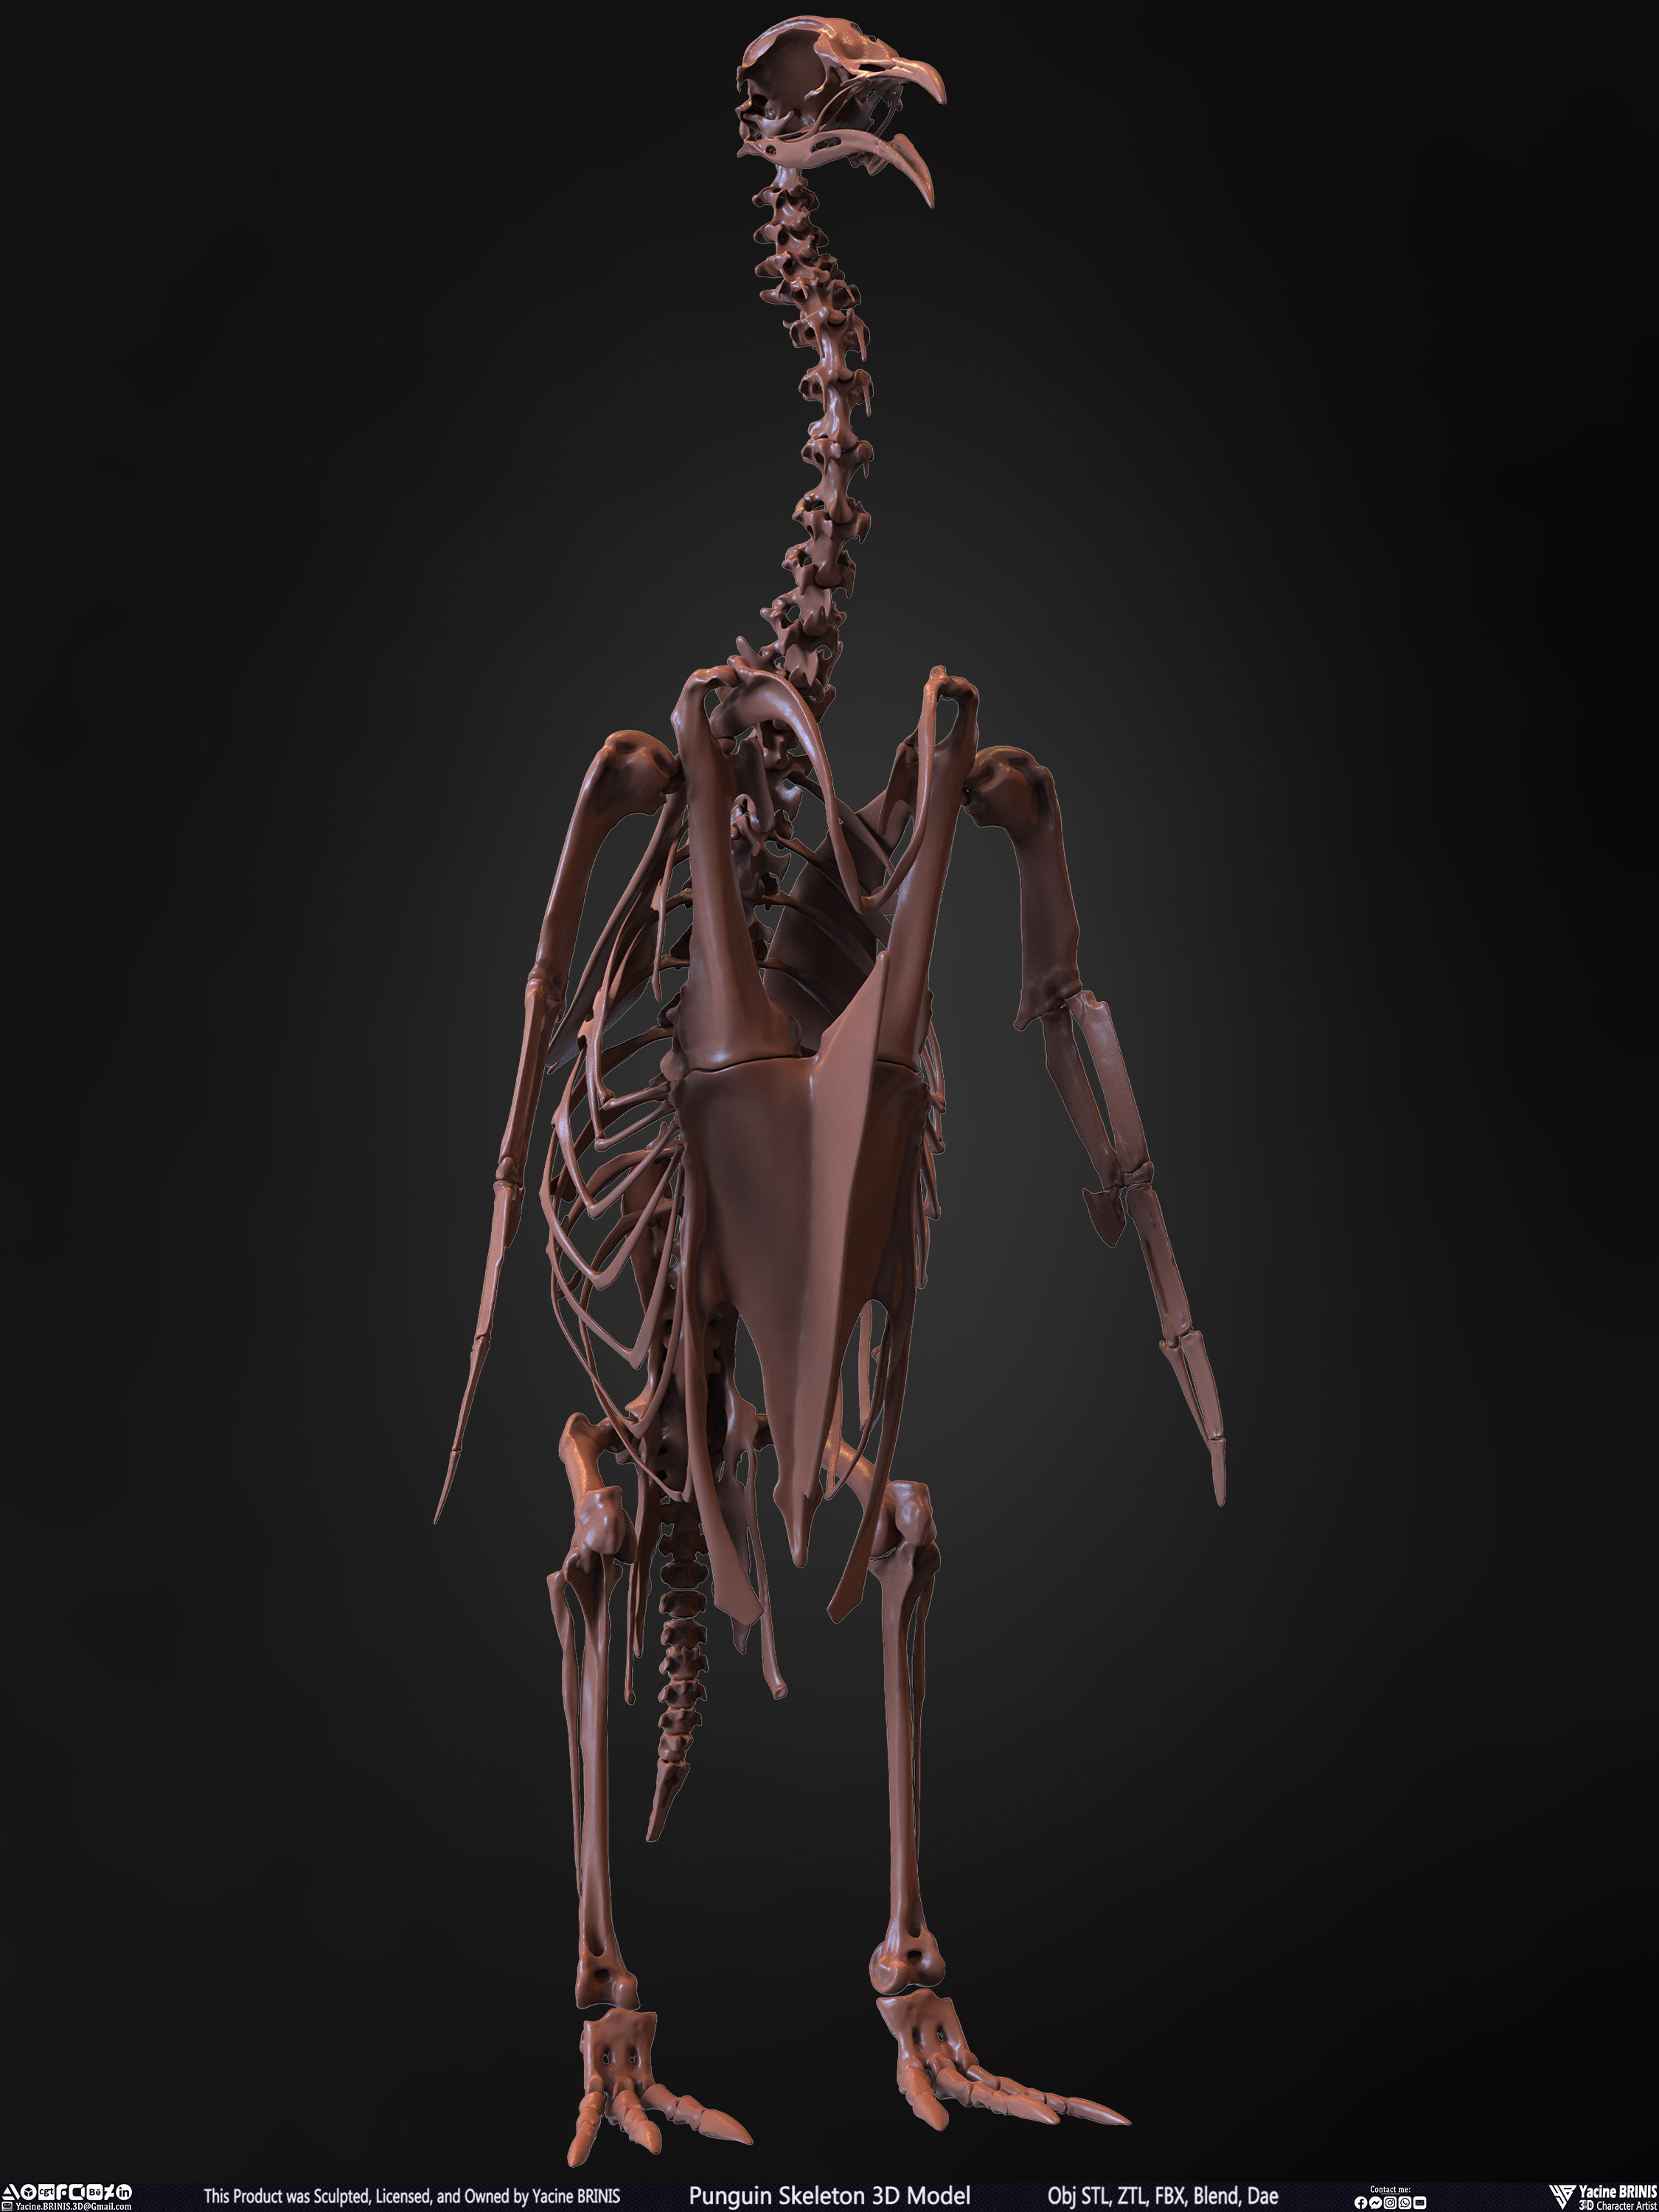 Penguin Skeleton 3D Model Sculpted by Yacine BRINIS Set 016